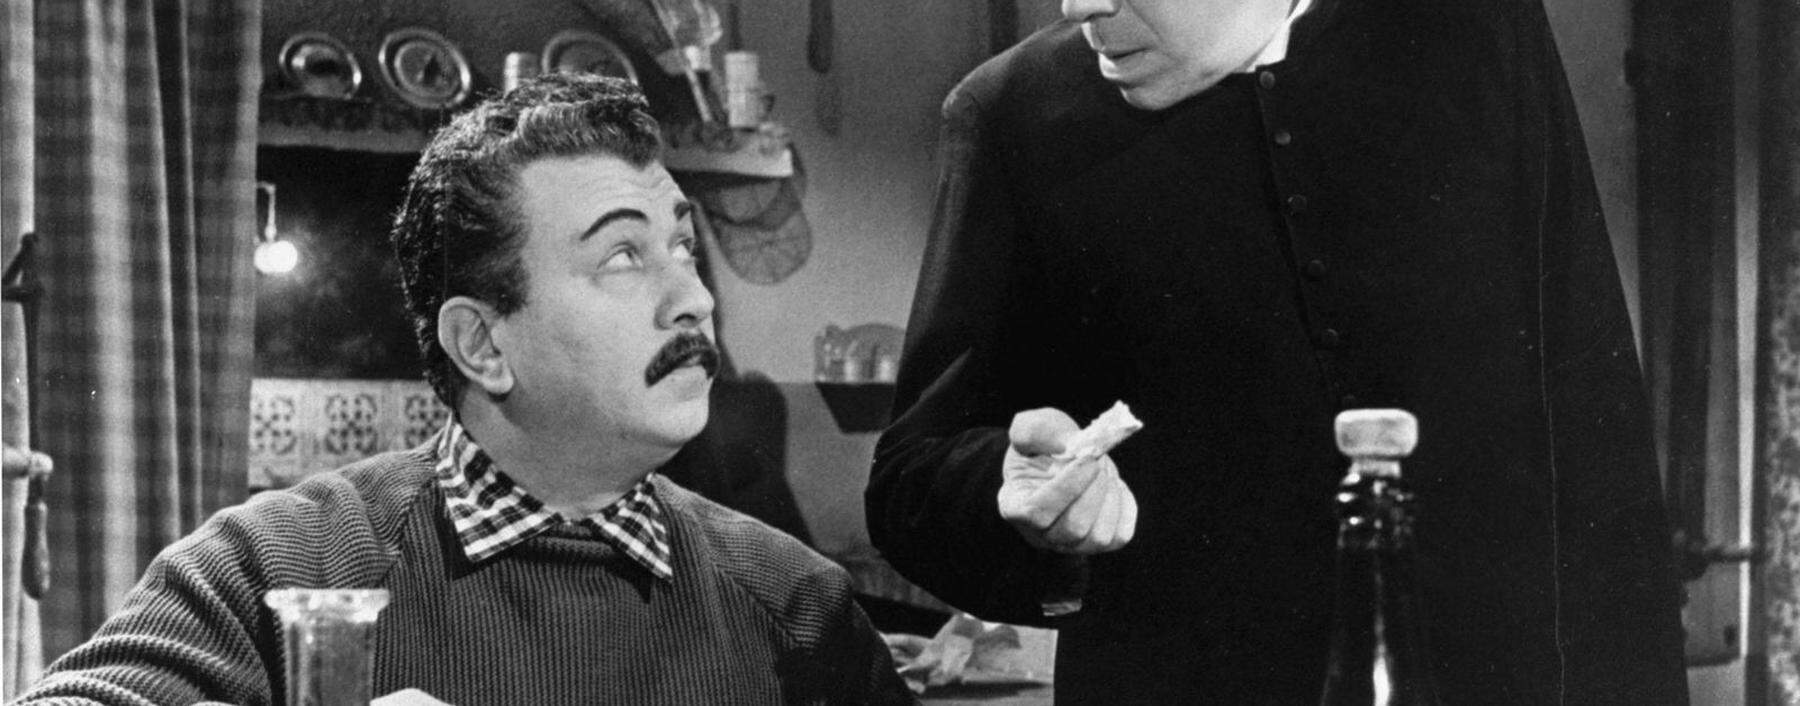 Les comediens Gino Cervi et Fernandel dans une scene du film Le petit monde de Don Camillo de Julien